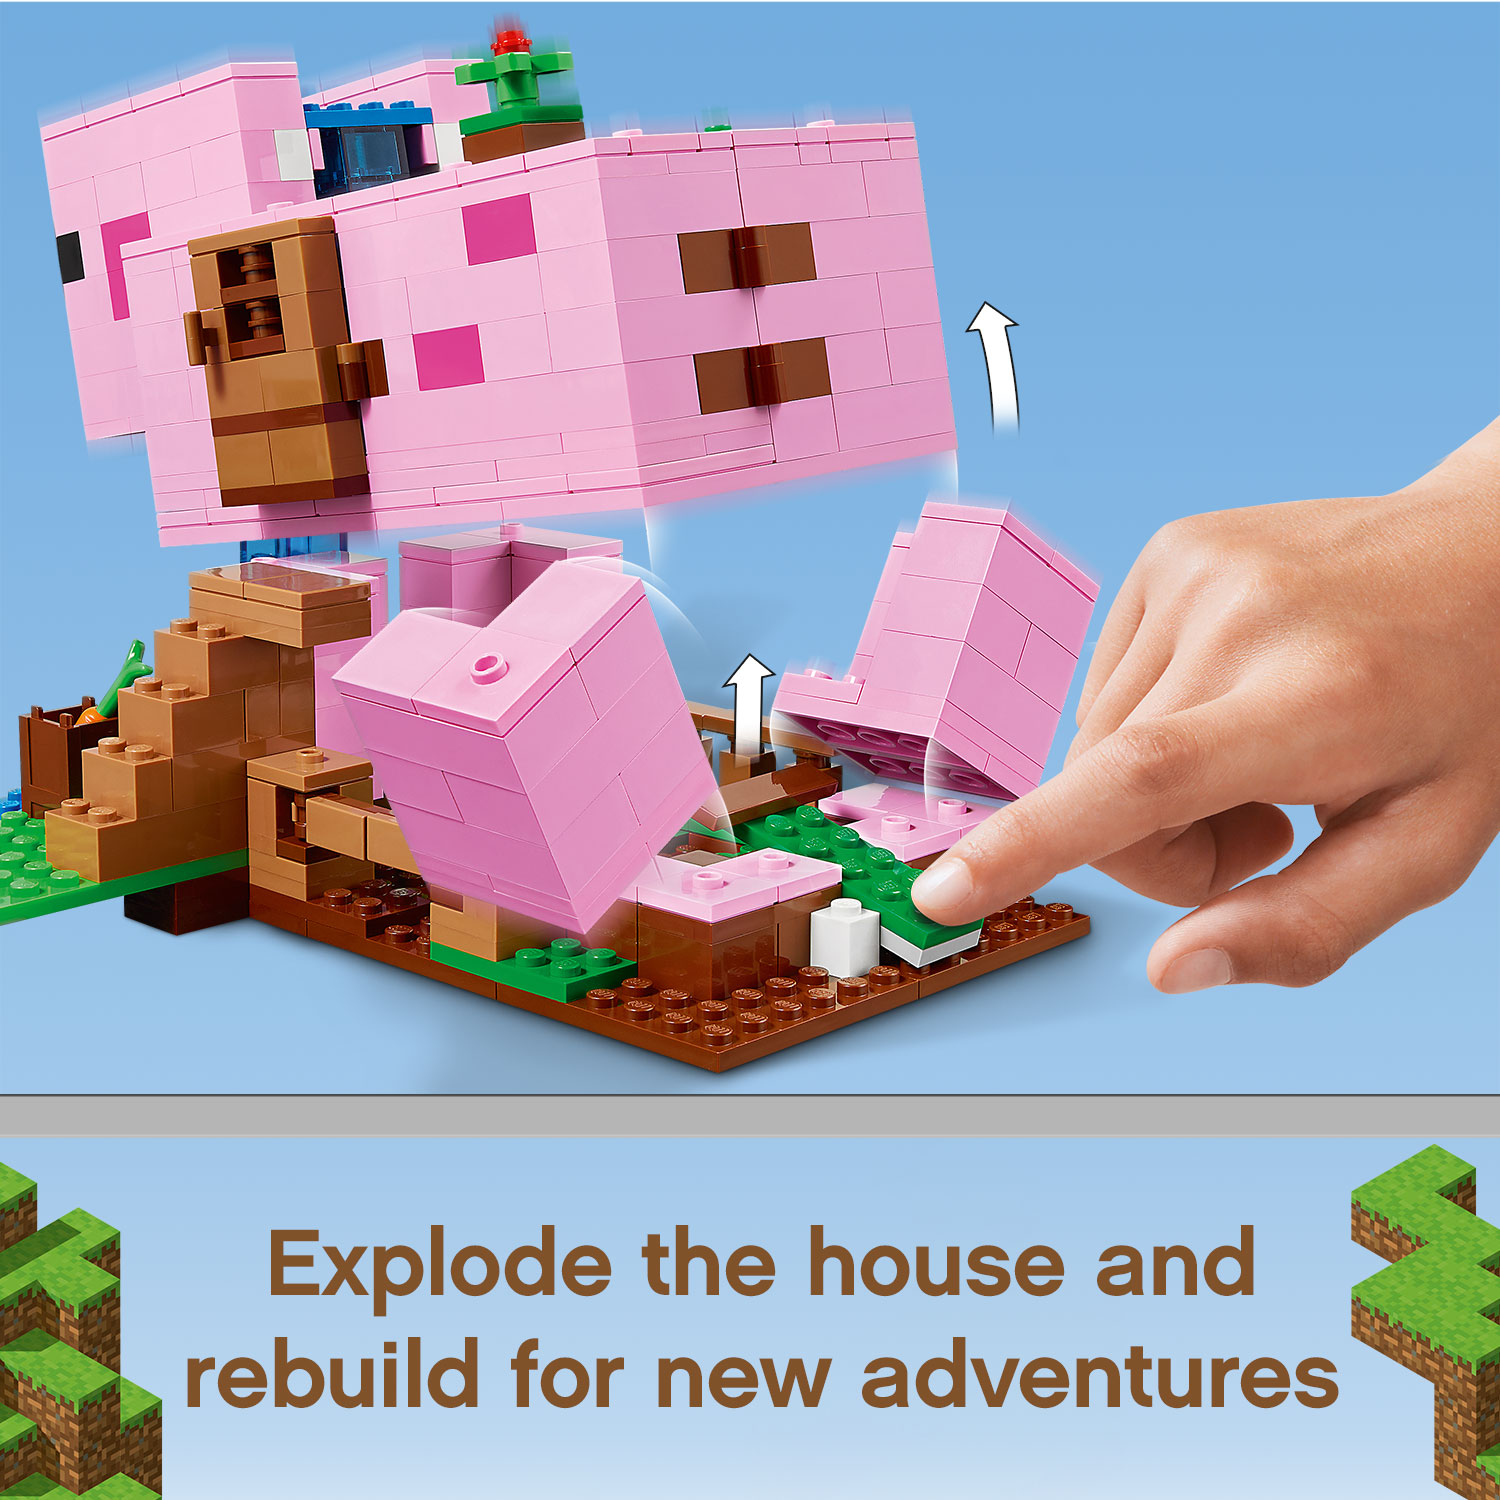 Đồ Chơi Lắp Ráp LEGO Minecraft Ngôi Nhà Heo 21170  Cho Bé Trên 8 Tuổi